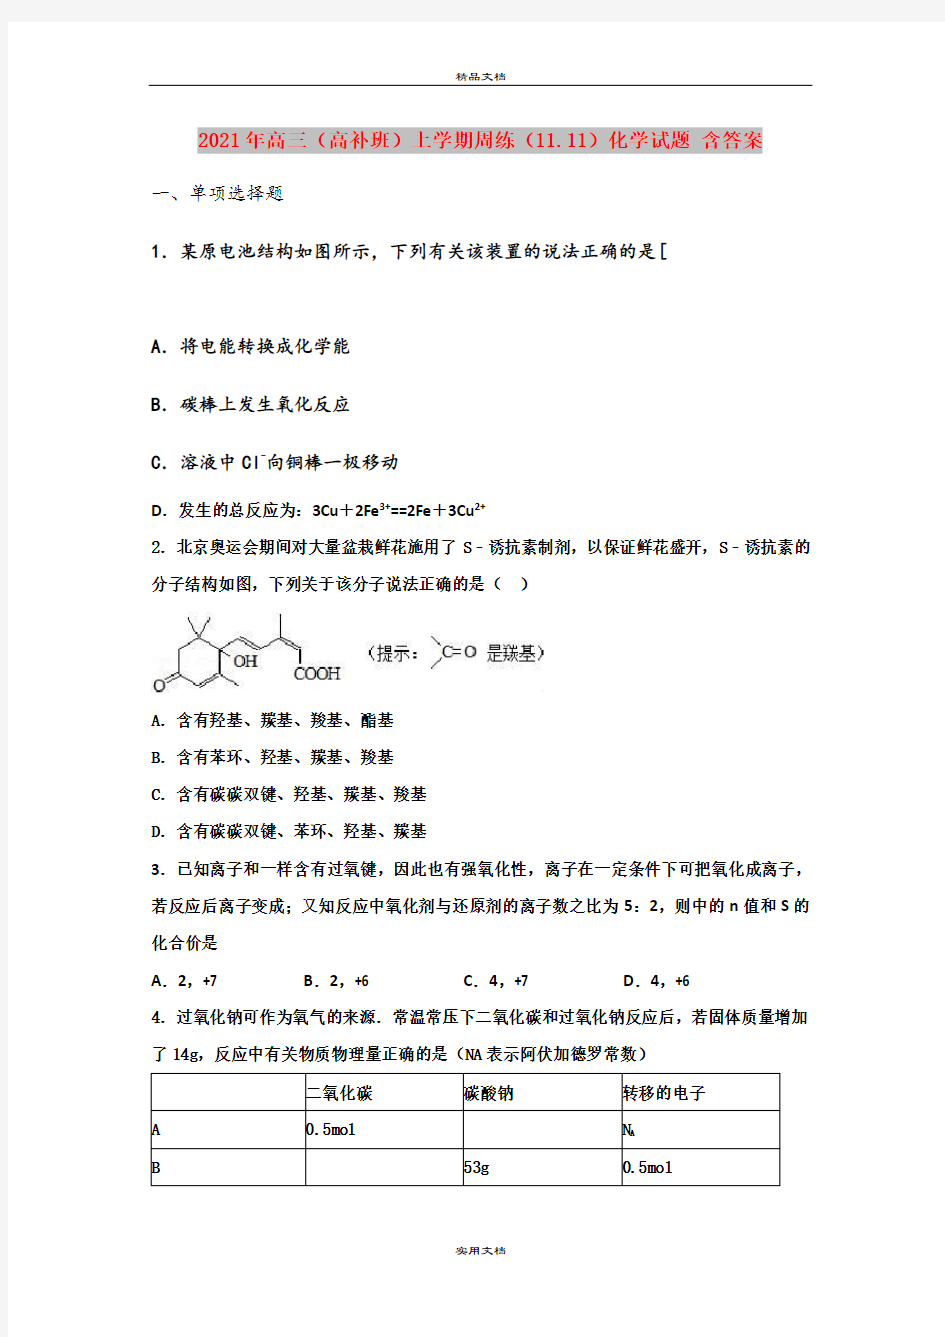 2021年高三(高补班)上学期周练(11.11)化学试题 含答案